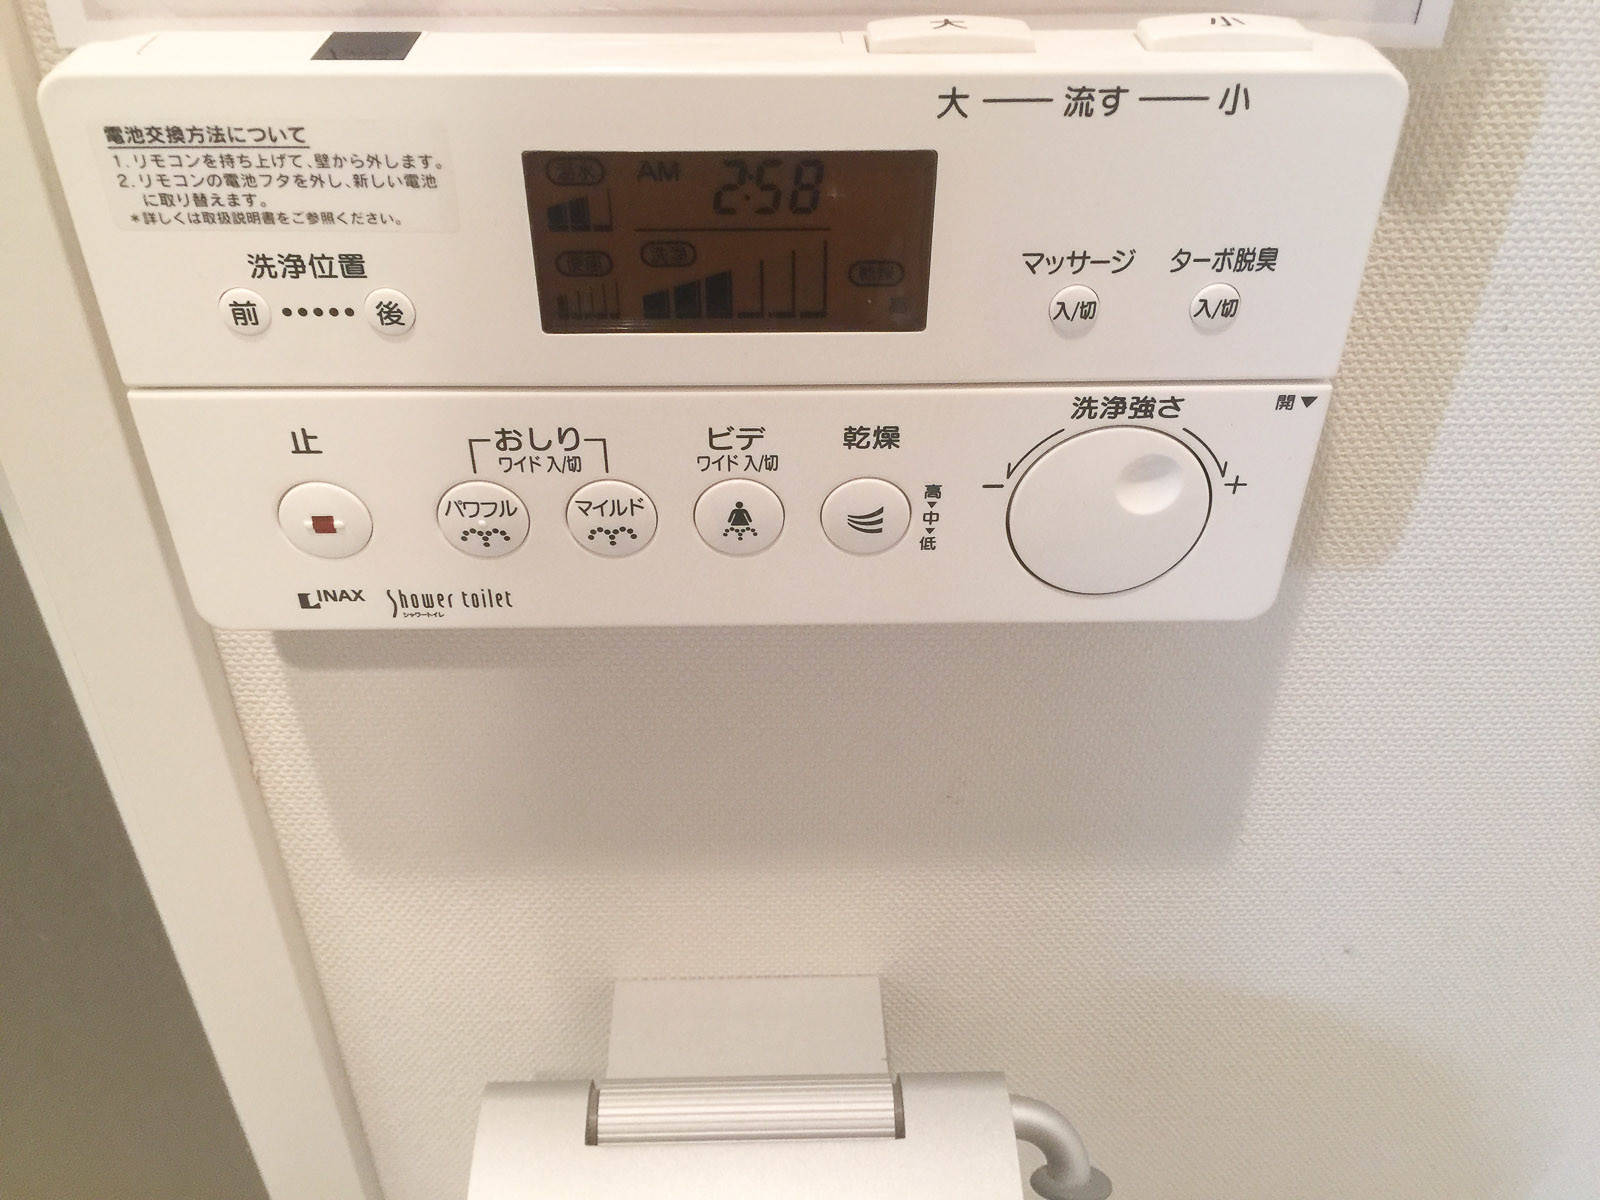 Порно видео камера в японском туалете